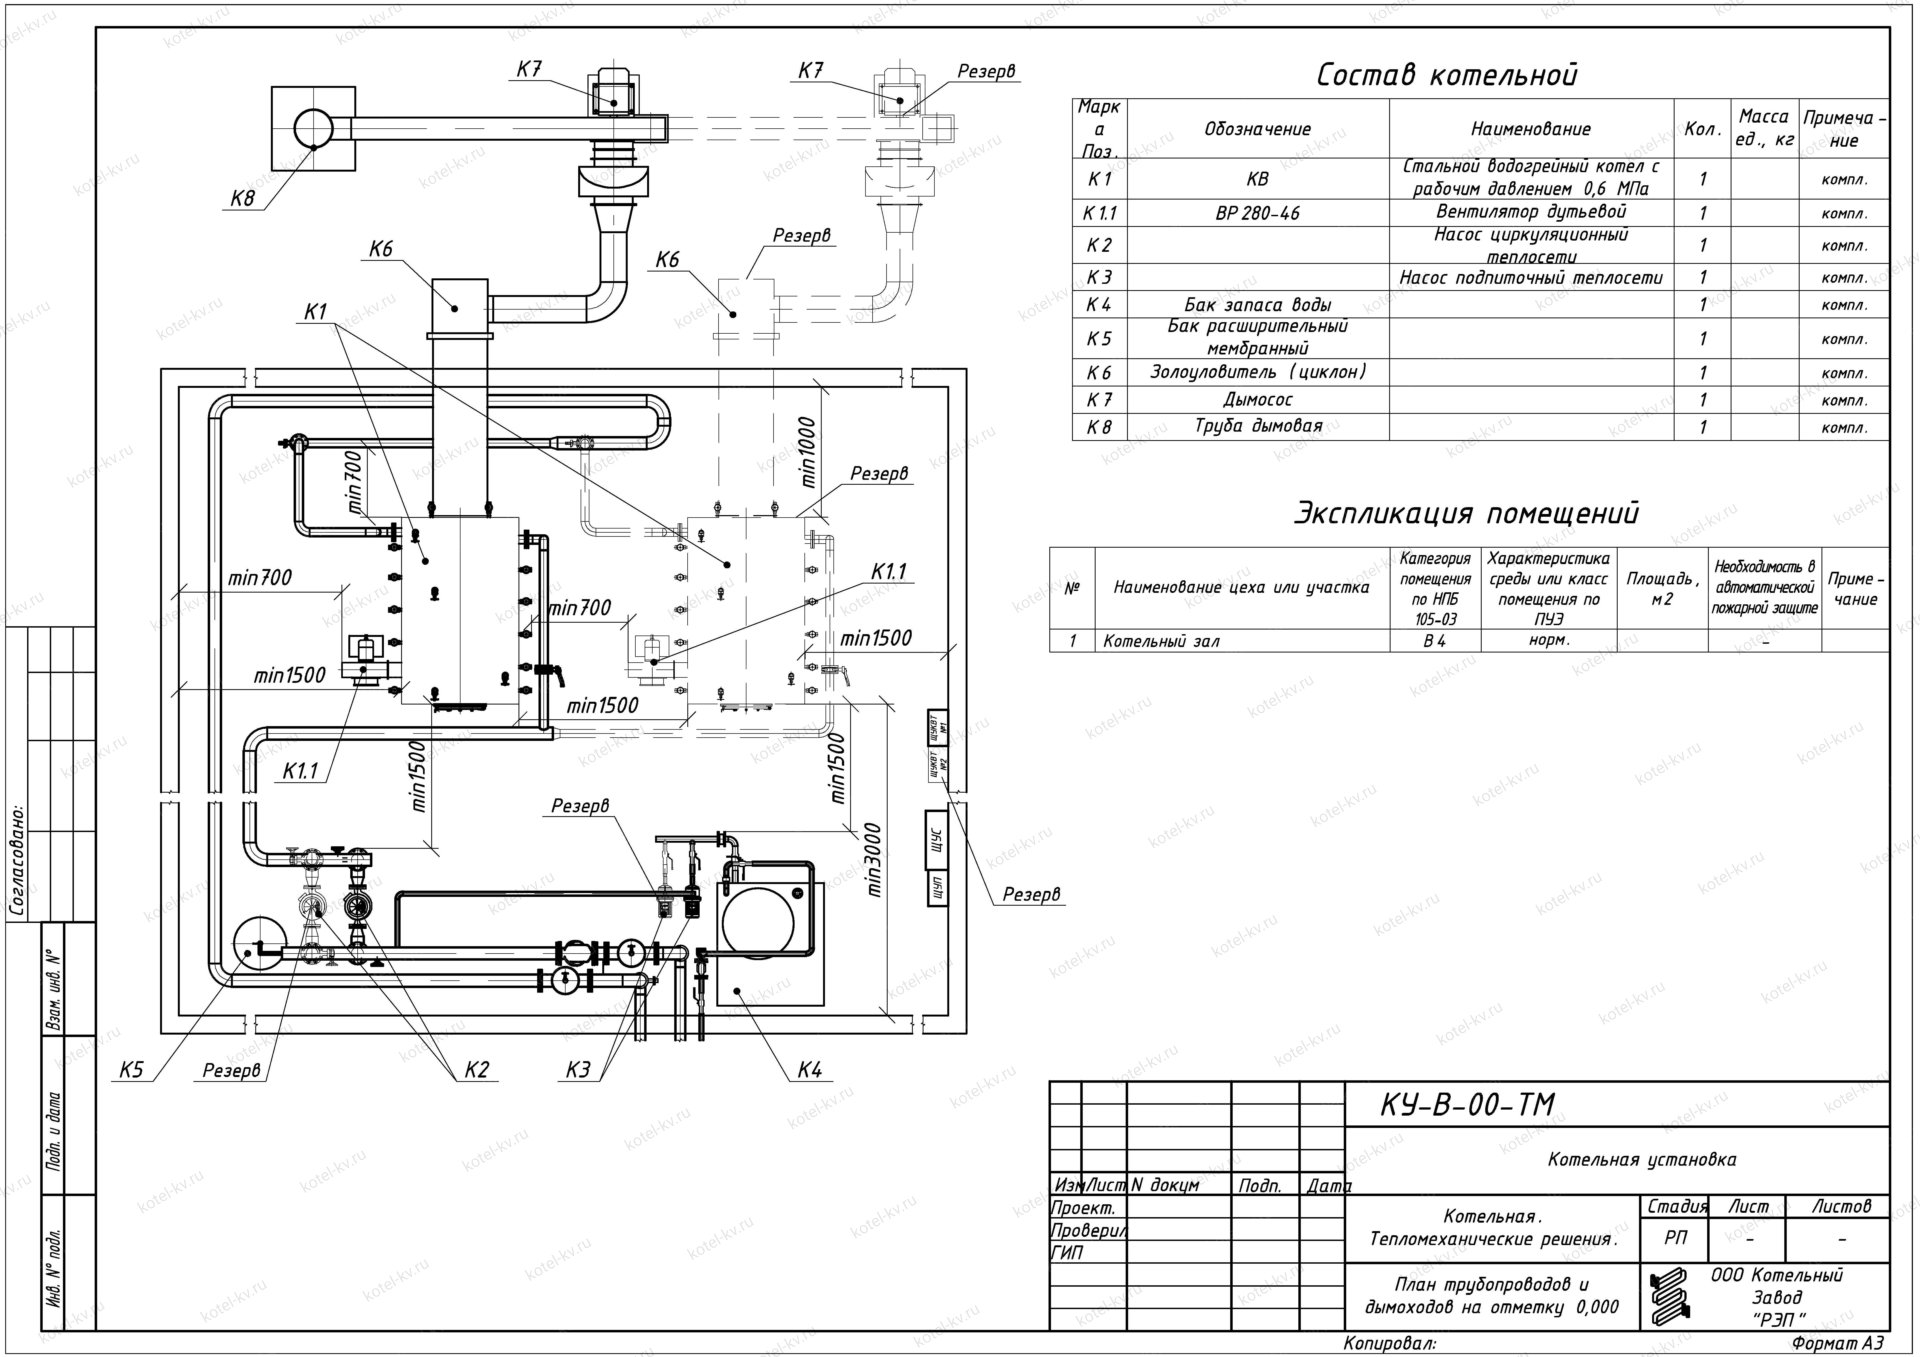 Схема котельной частного дома: принцип автоматизации и расположения оборудования